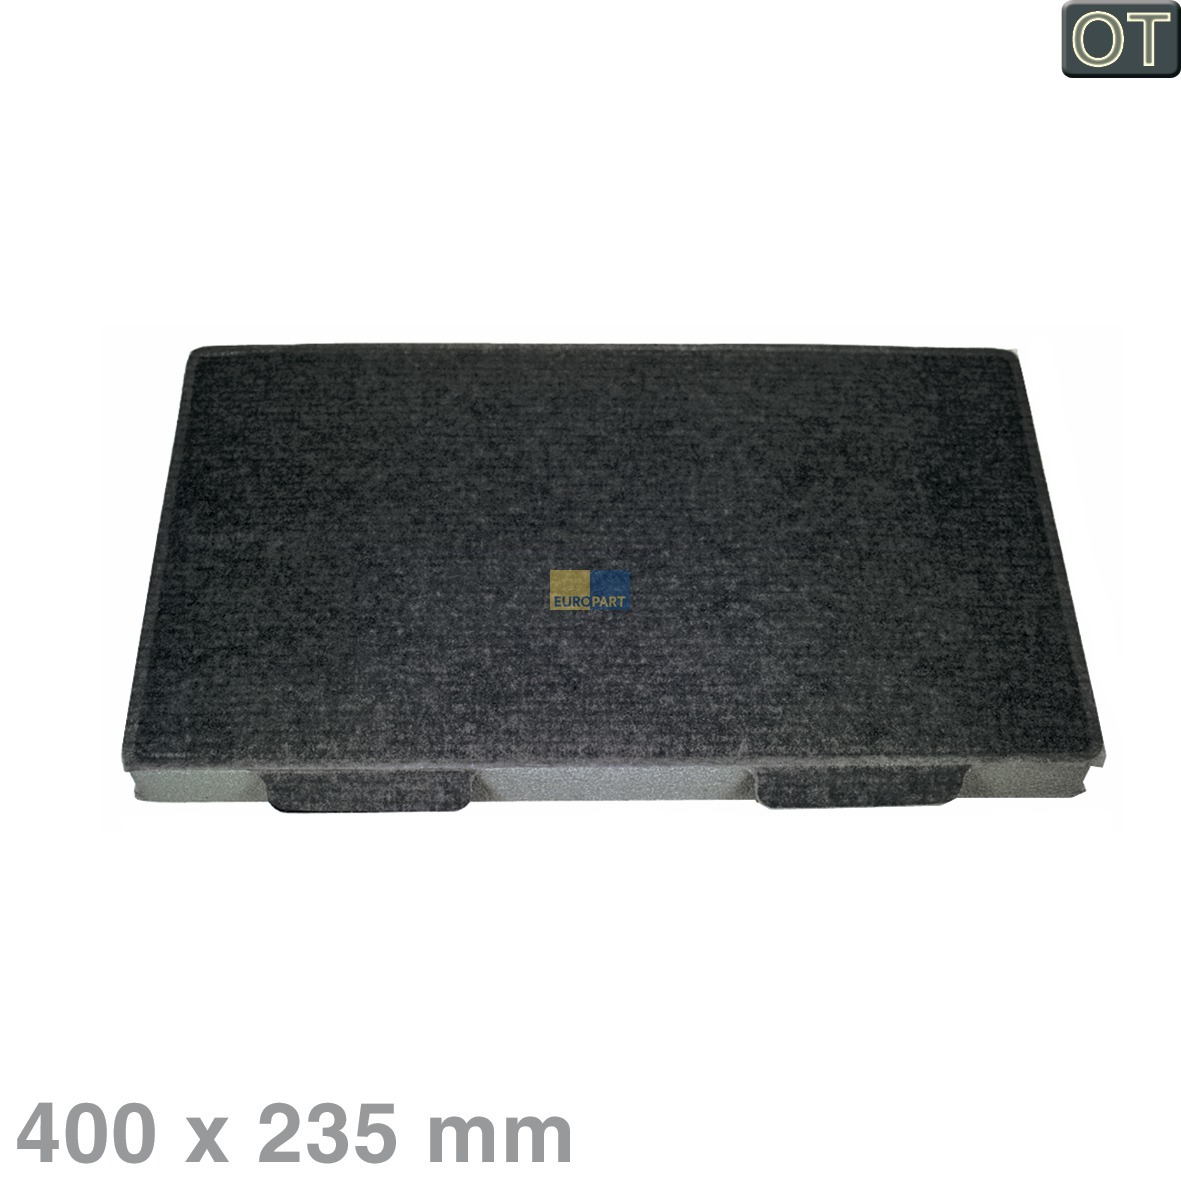 Kohlefilter Miele 5182192 DKF8 400x235mm für Dunstabzugshaube (EA-5182192) von Europart